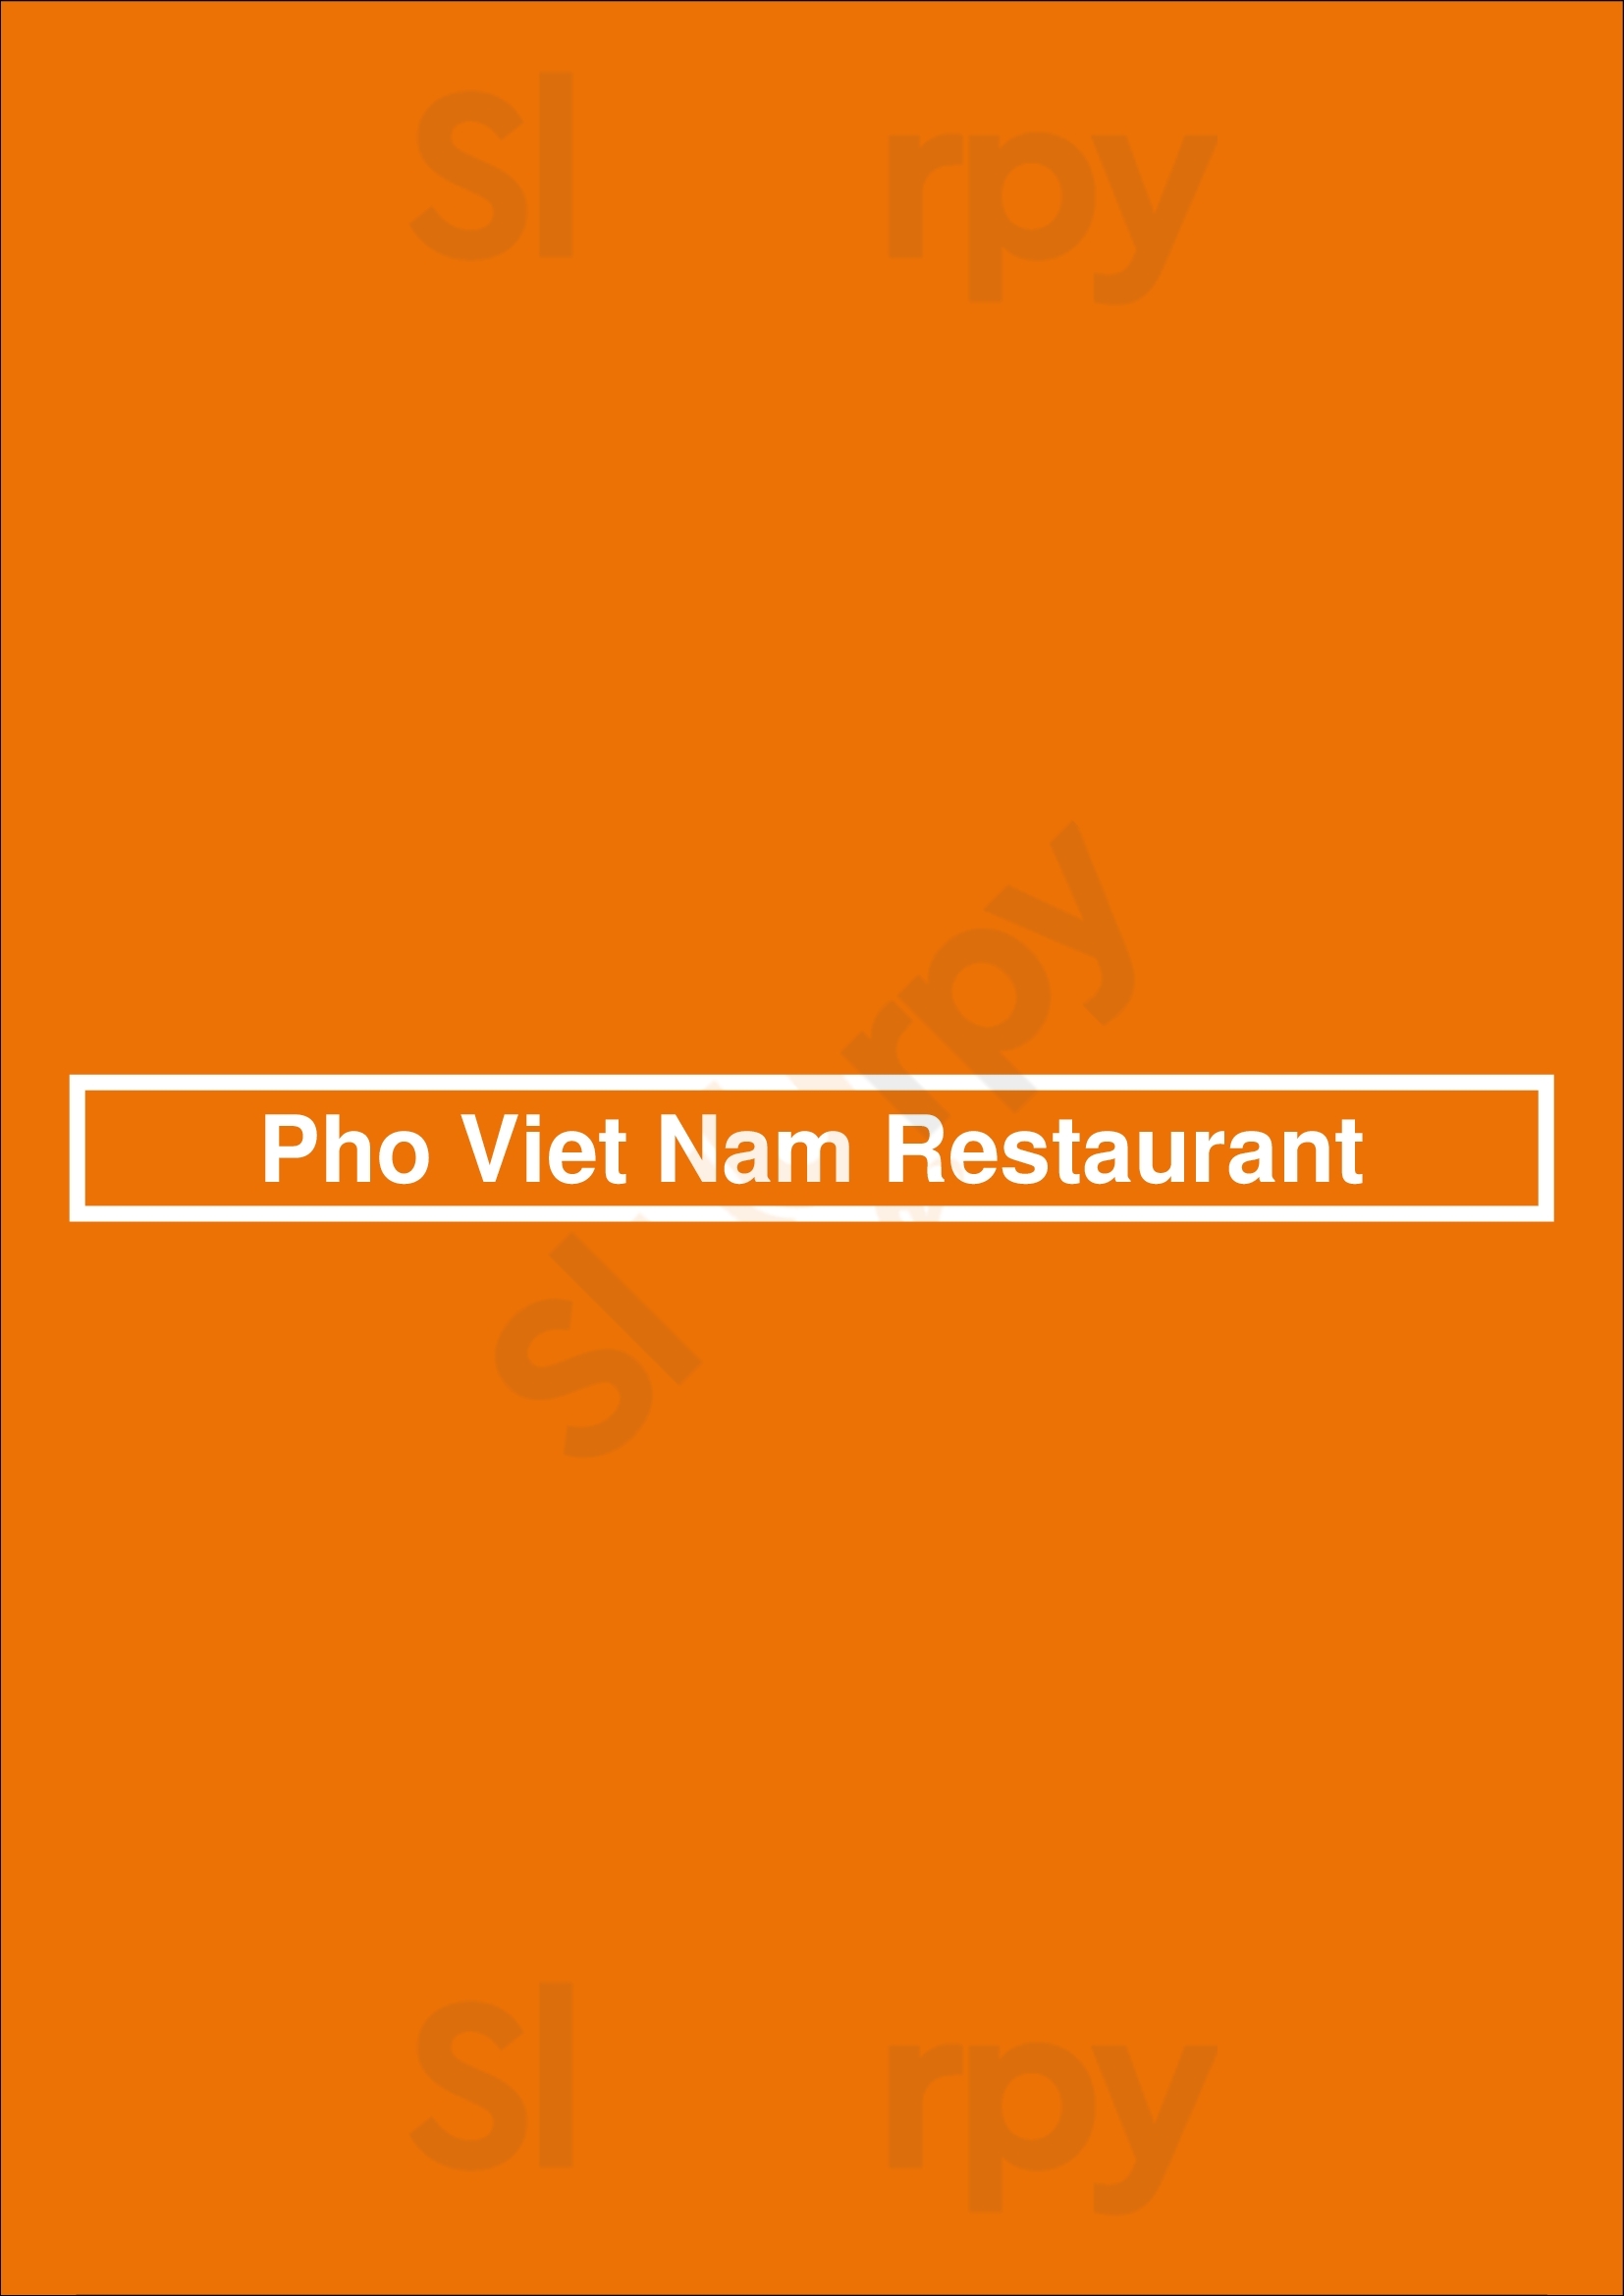 Pho Viet Nam Restaurant Brampton Menu - 1